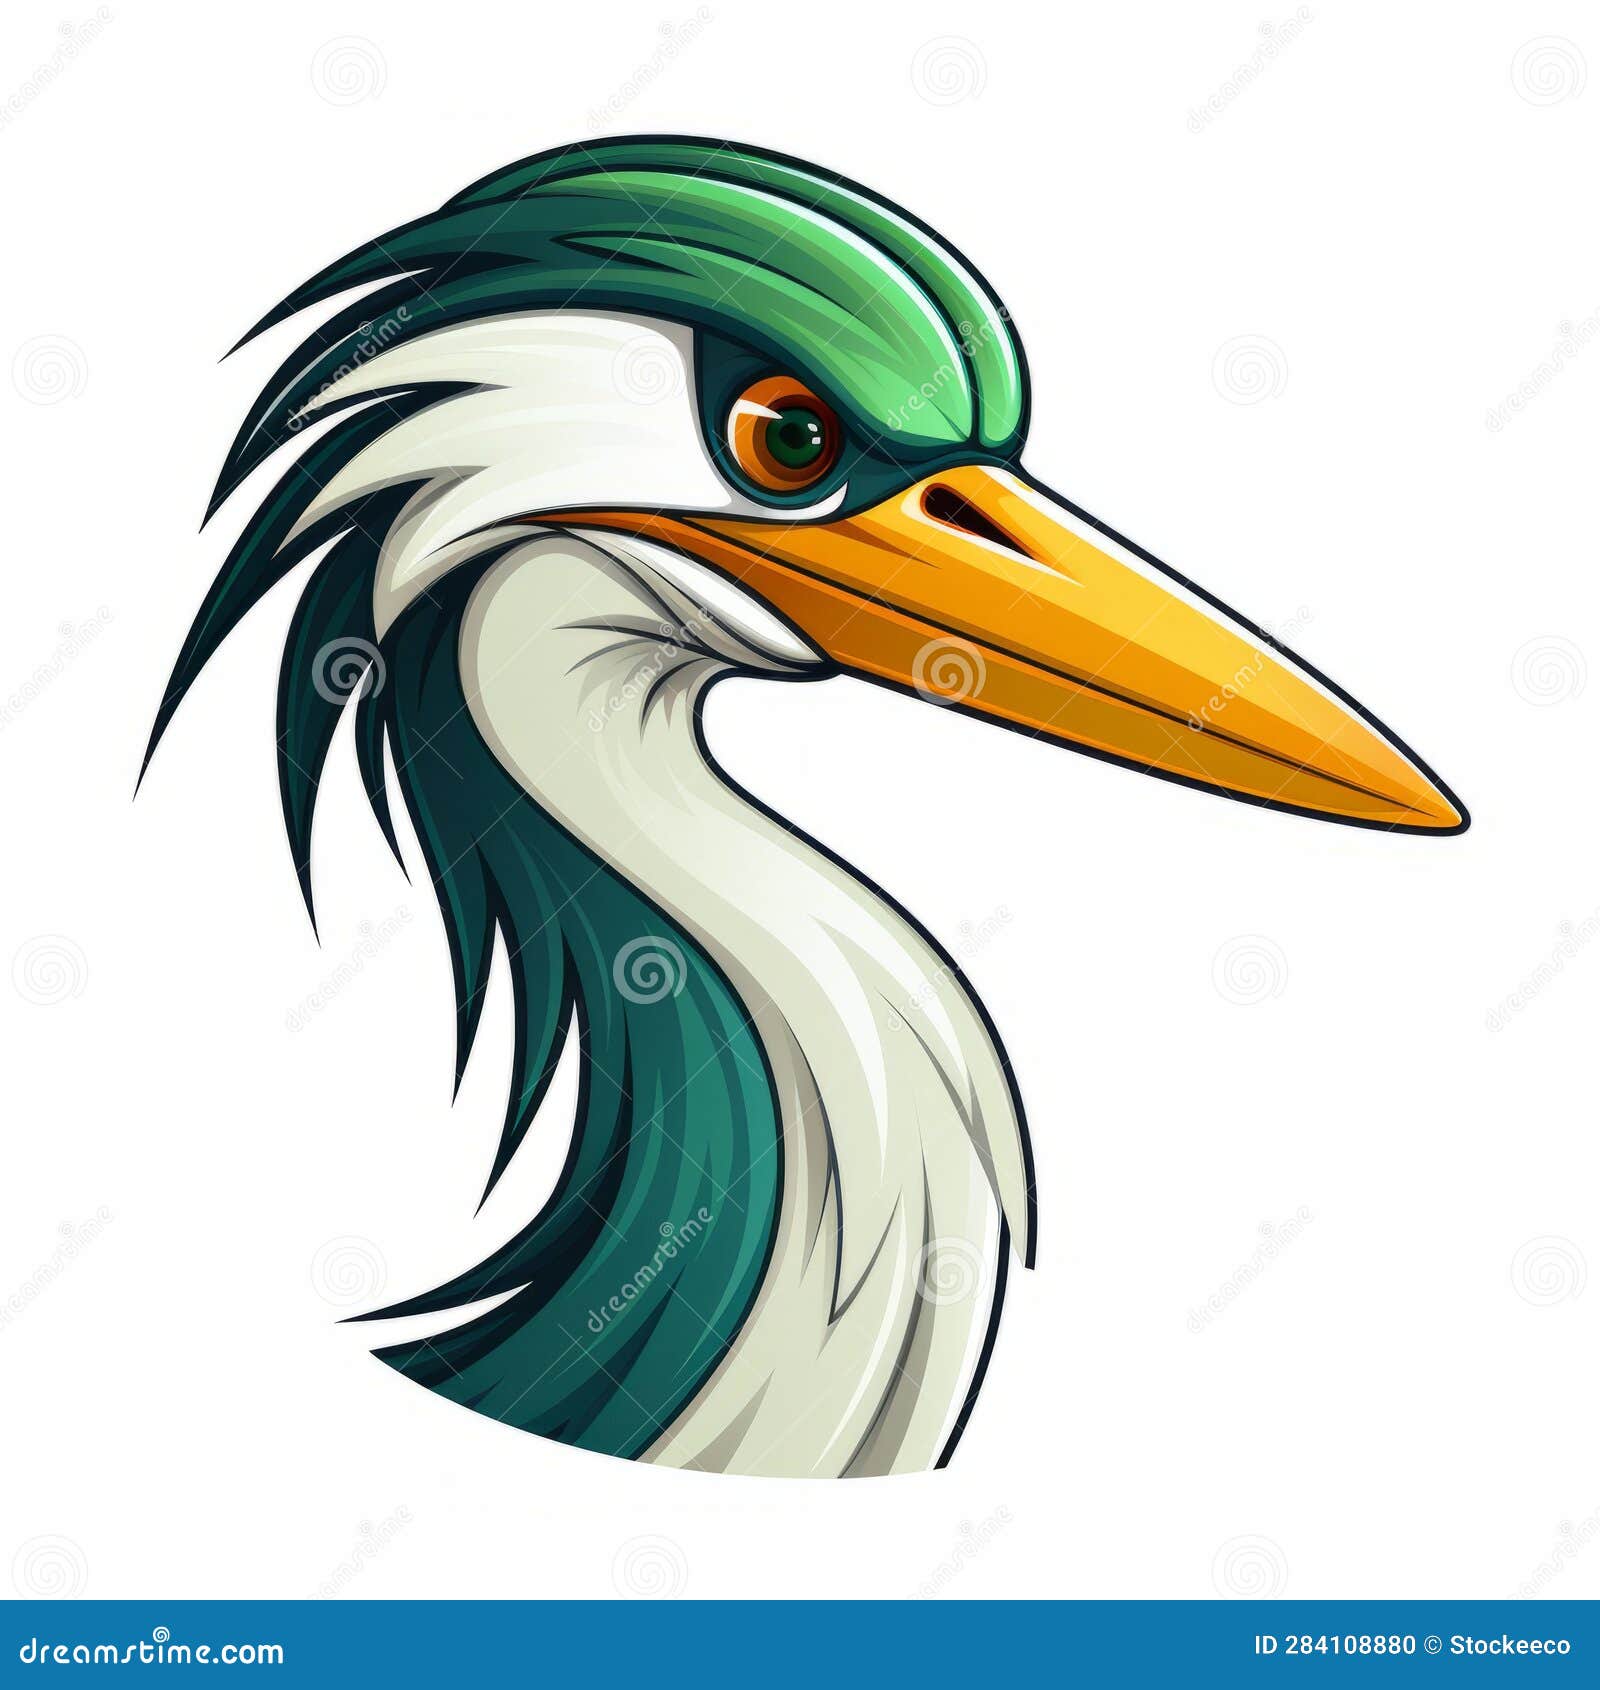 cartoon heron mascot: dark white and emerald 